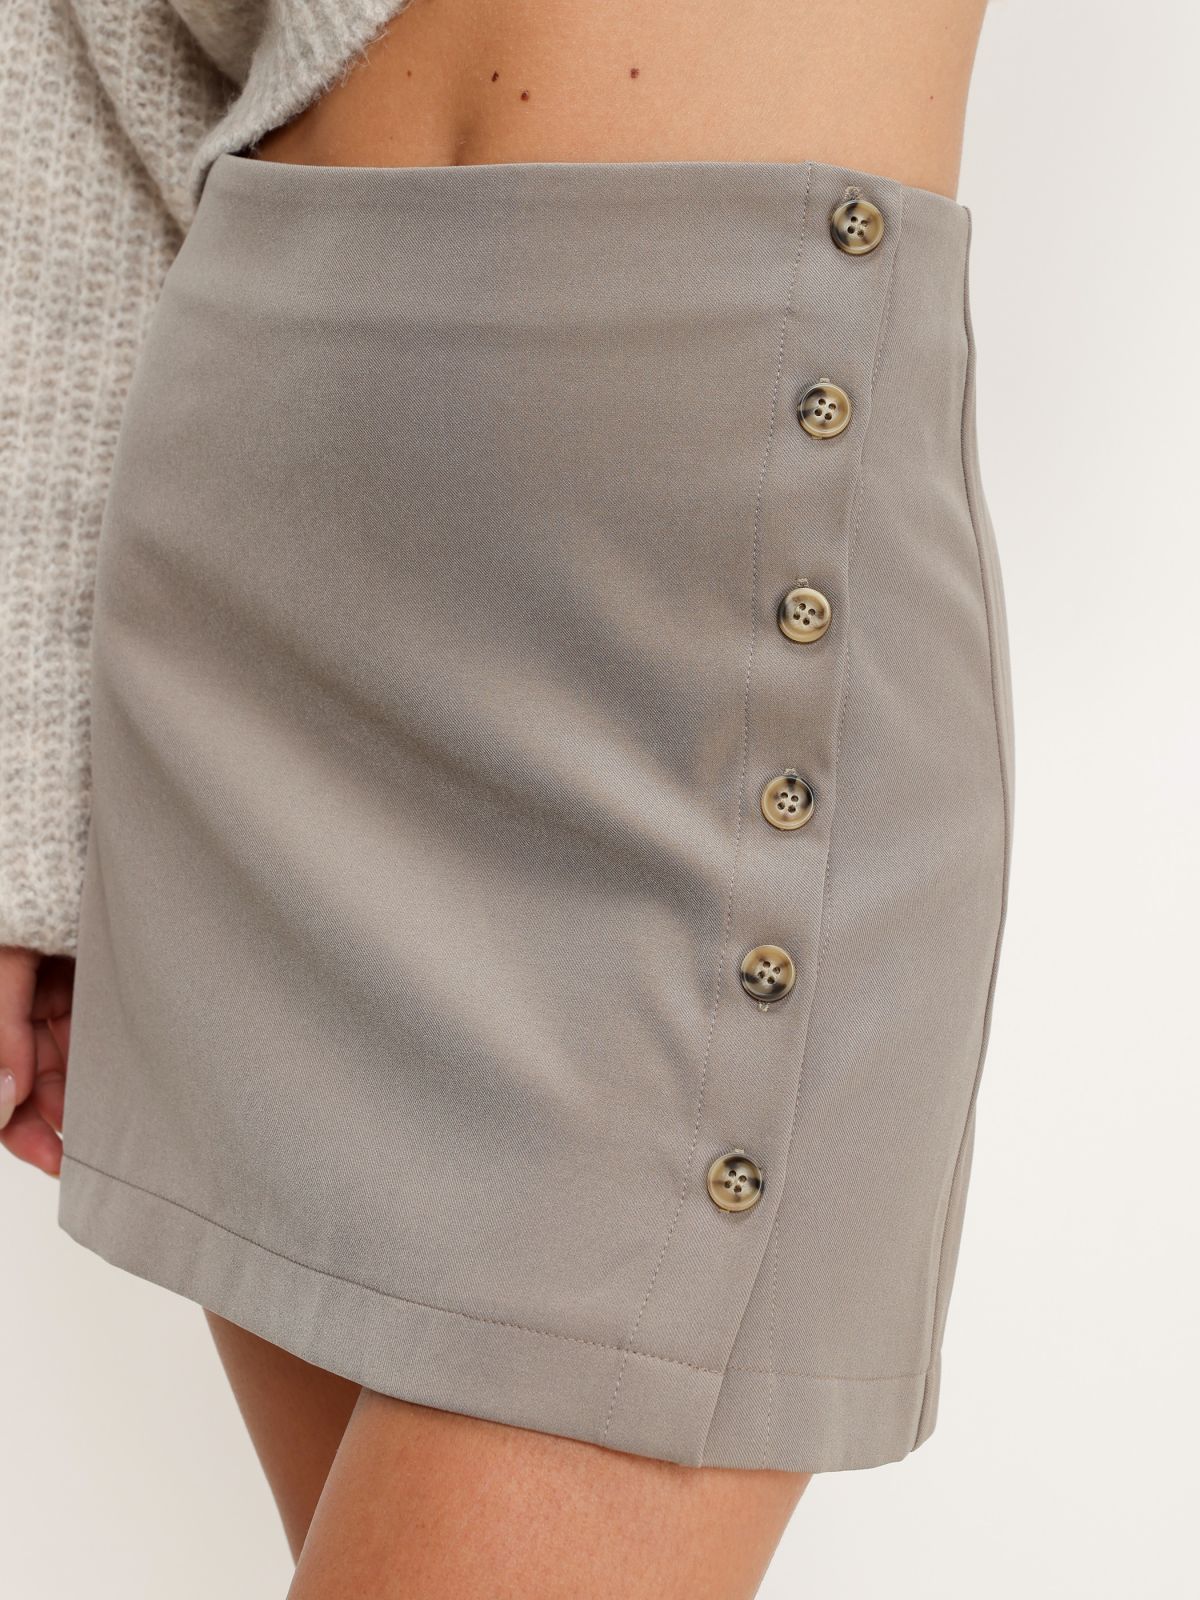  חצאית מיני עם כפתורים של TERMINAL X